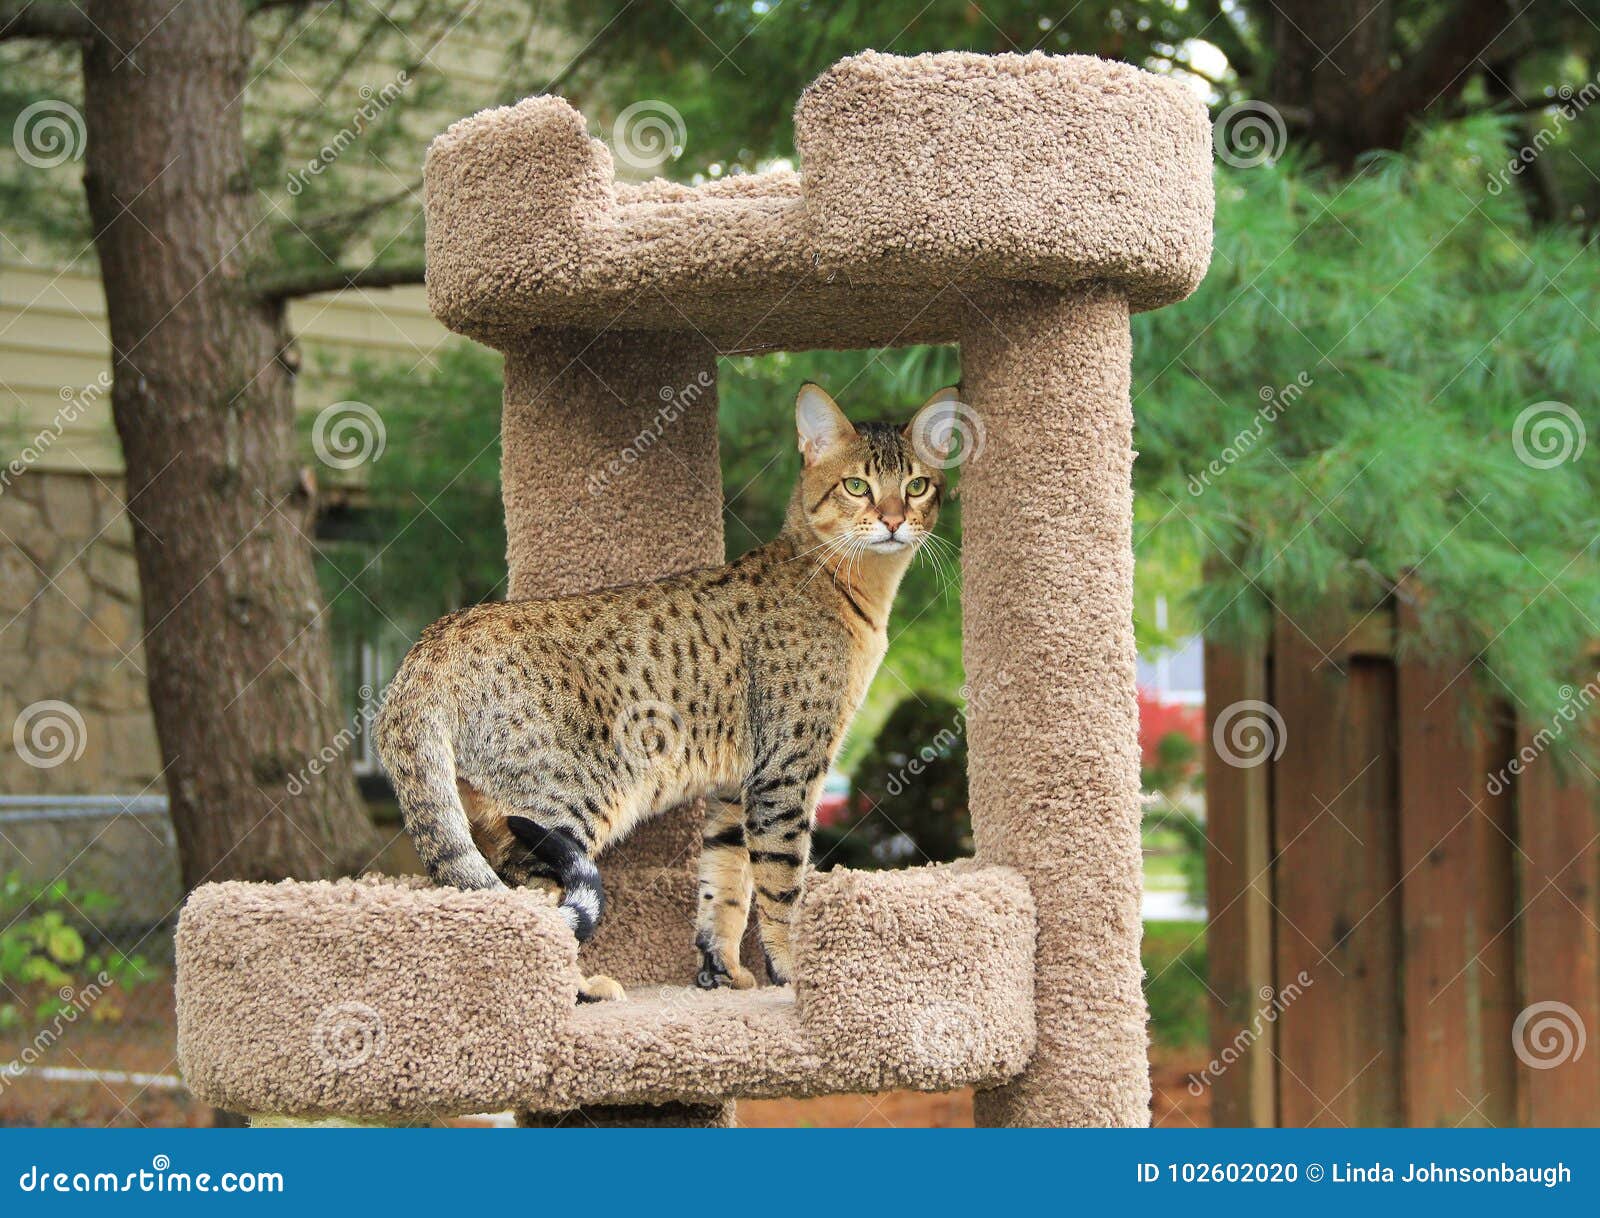 serval savannah kitten